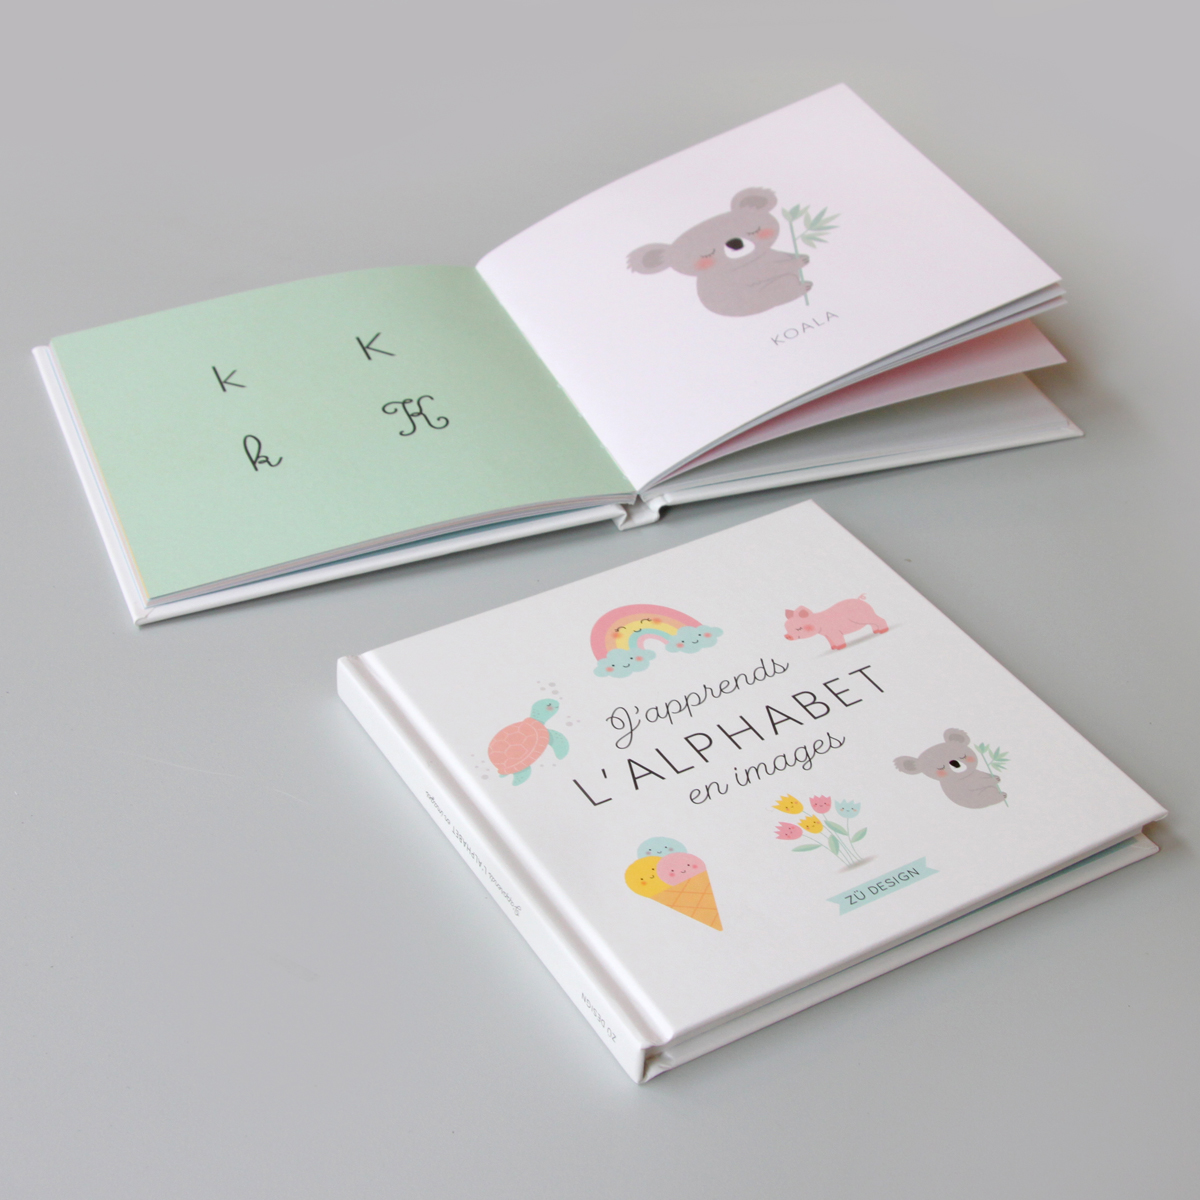 Livre éducatif pour apprendre l'alphabet imprimé en France - Zü